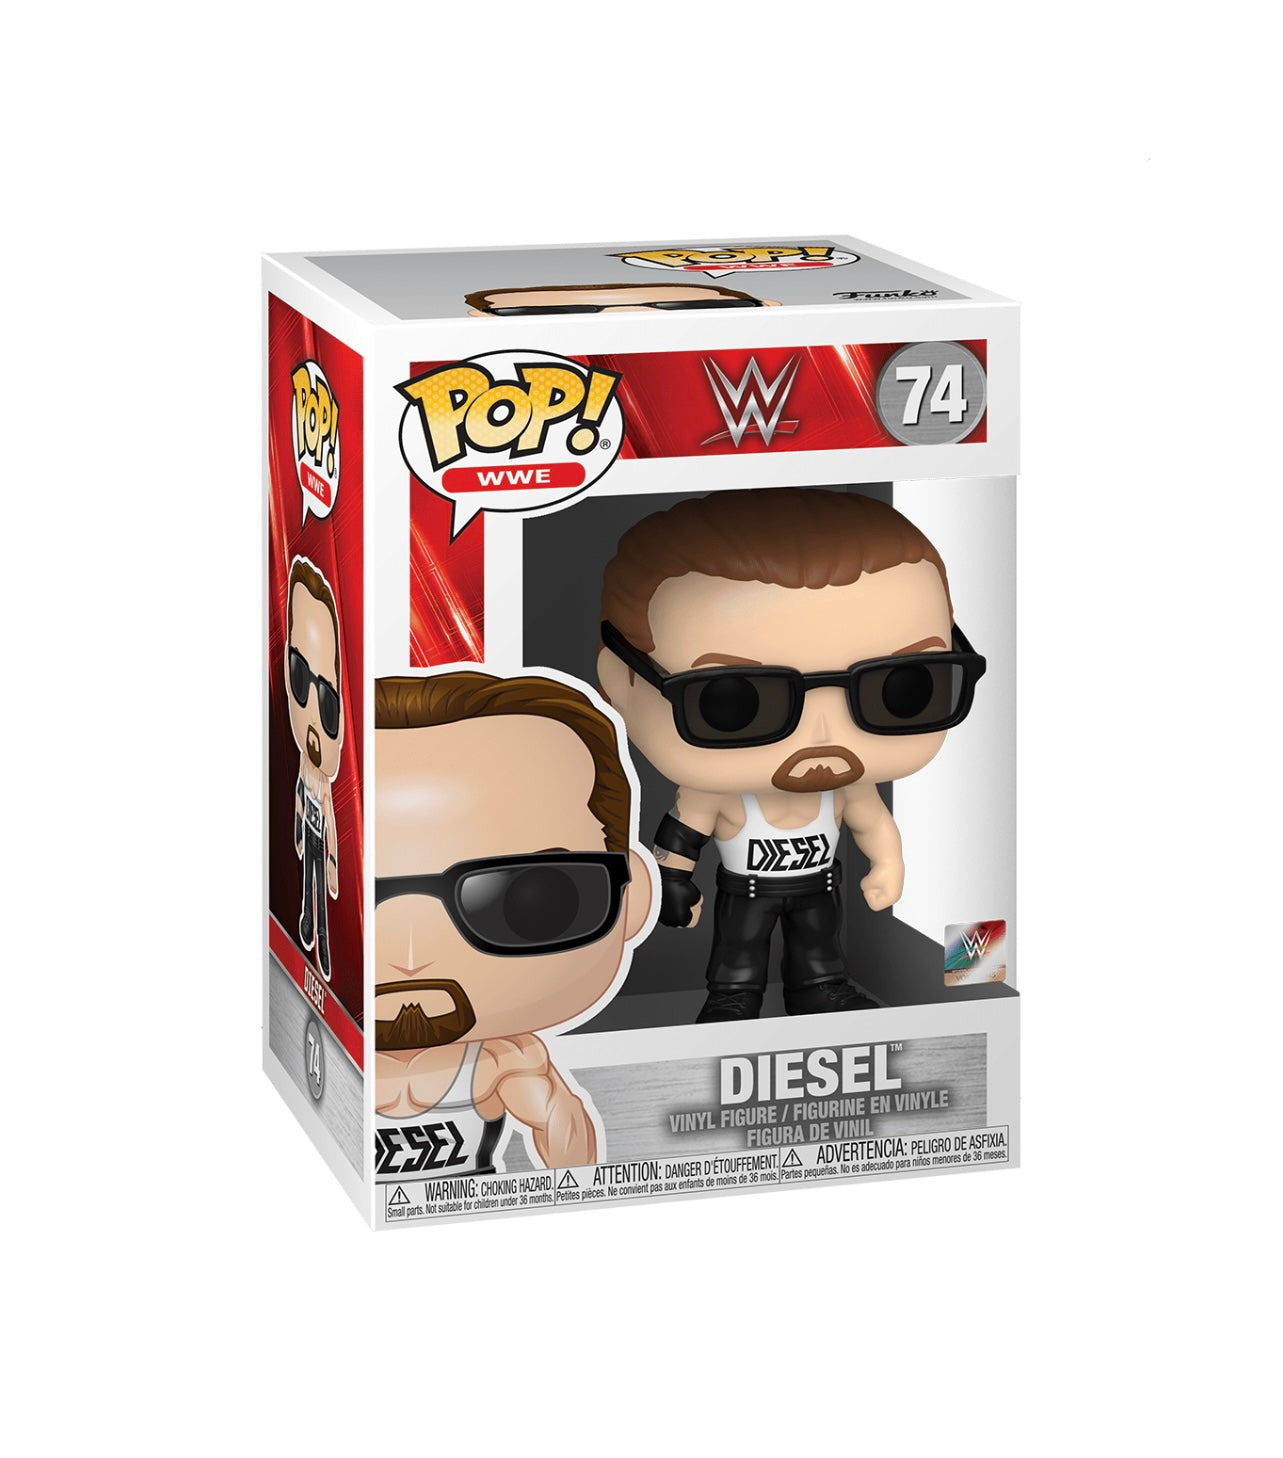 POP! WWE Diesel #74